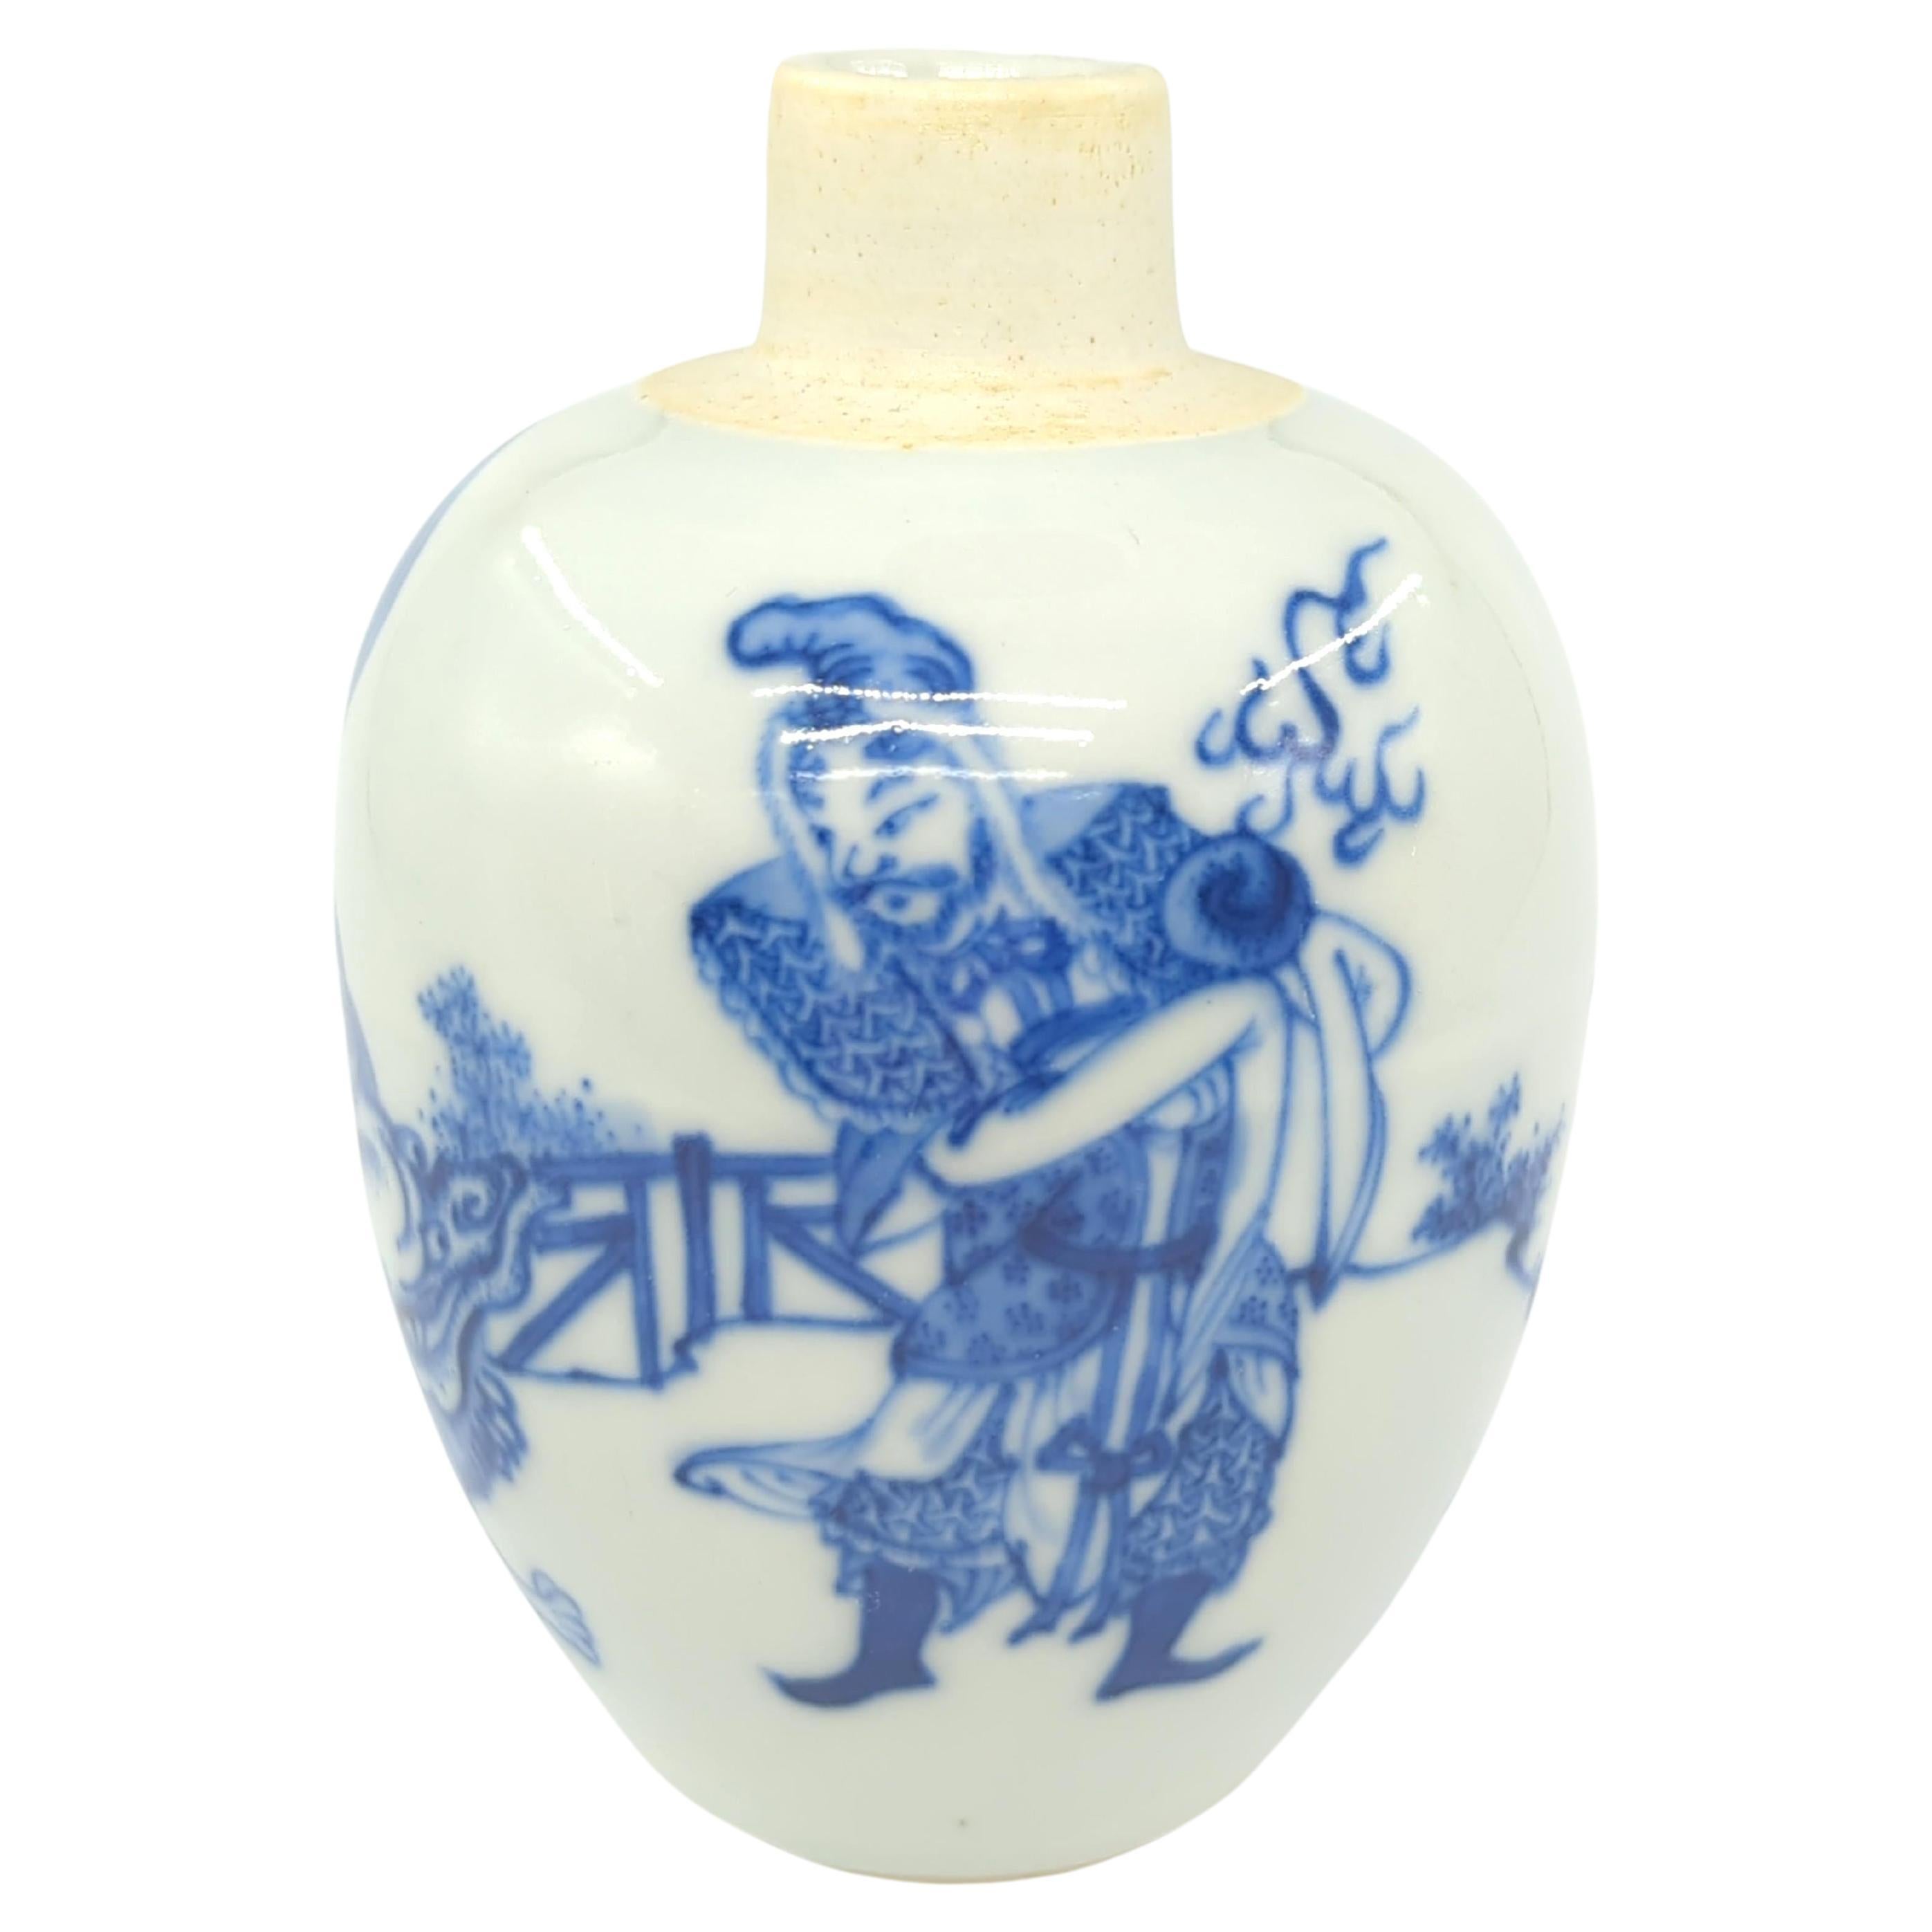 Jarre à thé chinoise bleu et blanc, marque Kangxi, ROC, début du 20e siècle.